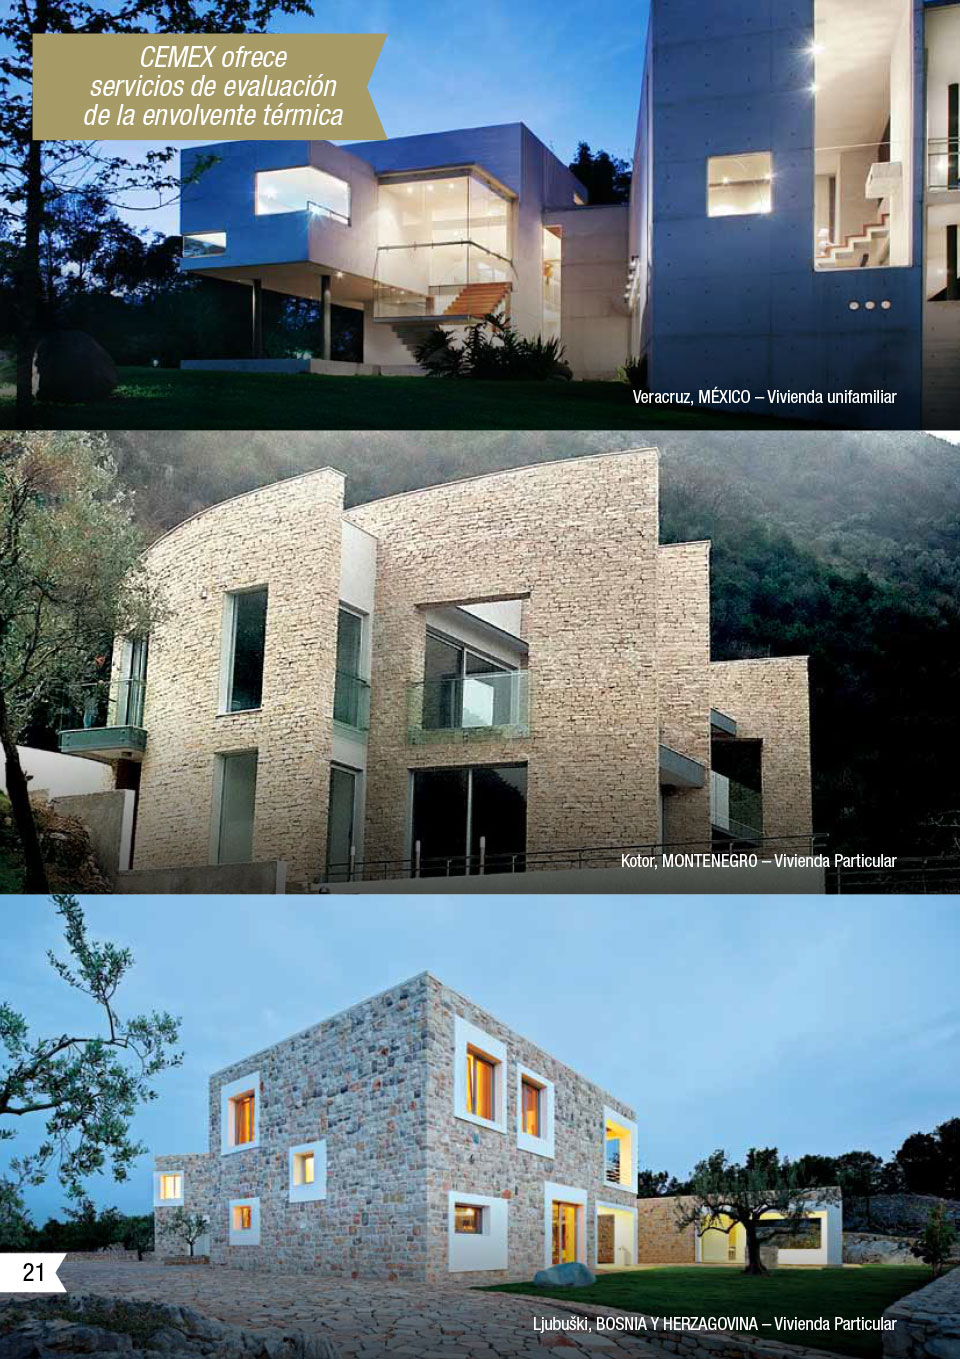 Una imagen que muestra algunos de los proyectos de CEMEX utilizando la solución de viviendas energéticamente eficientes.